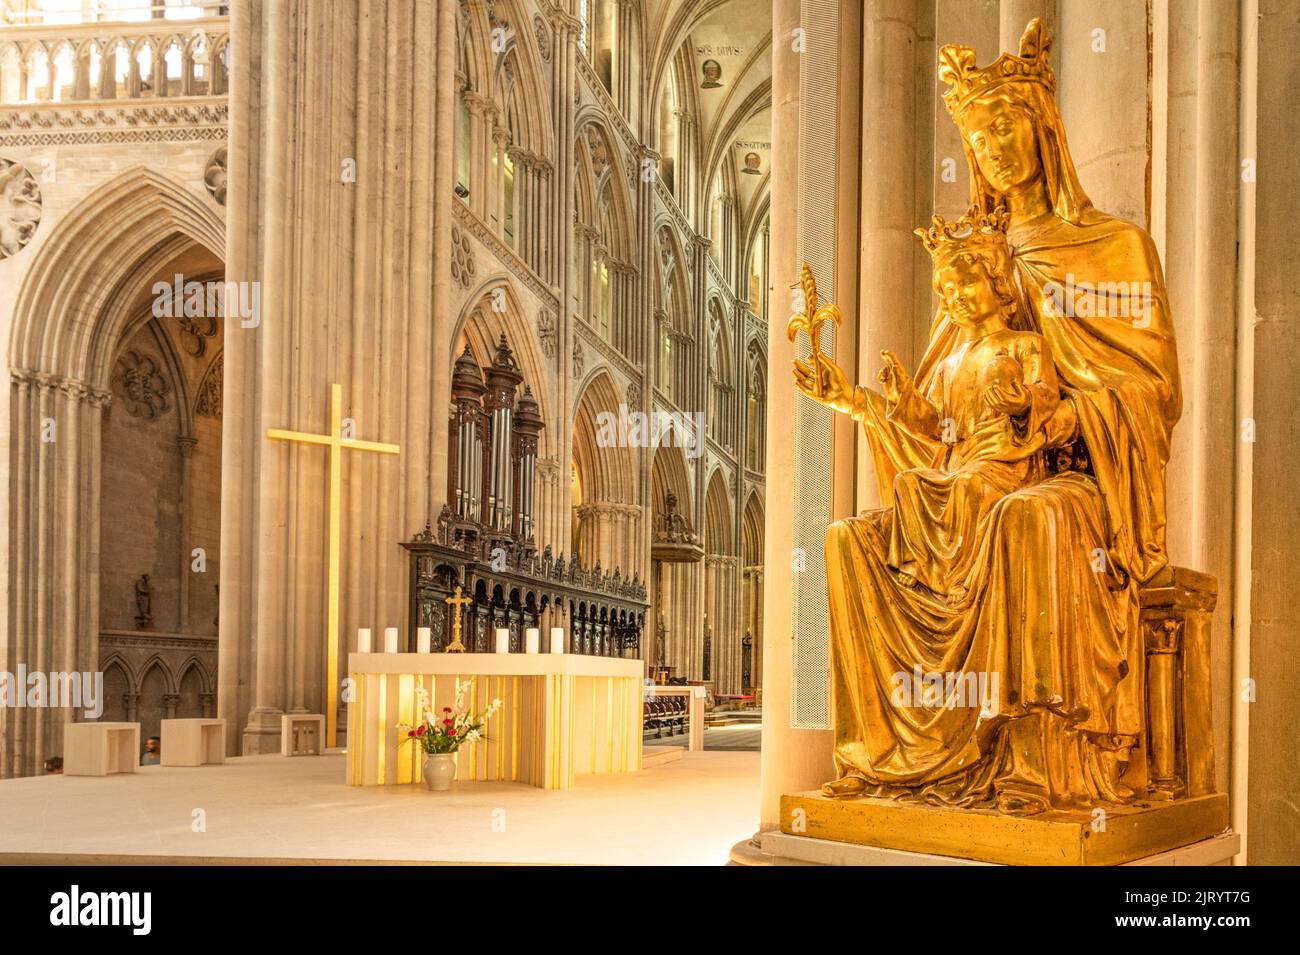 Virgen maría con un niño en el interior de la catedral de Bayeux, Francia Foto de stock